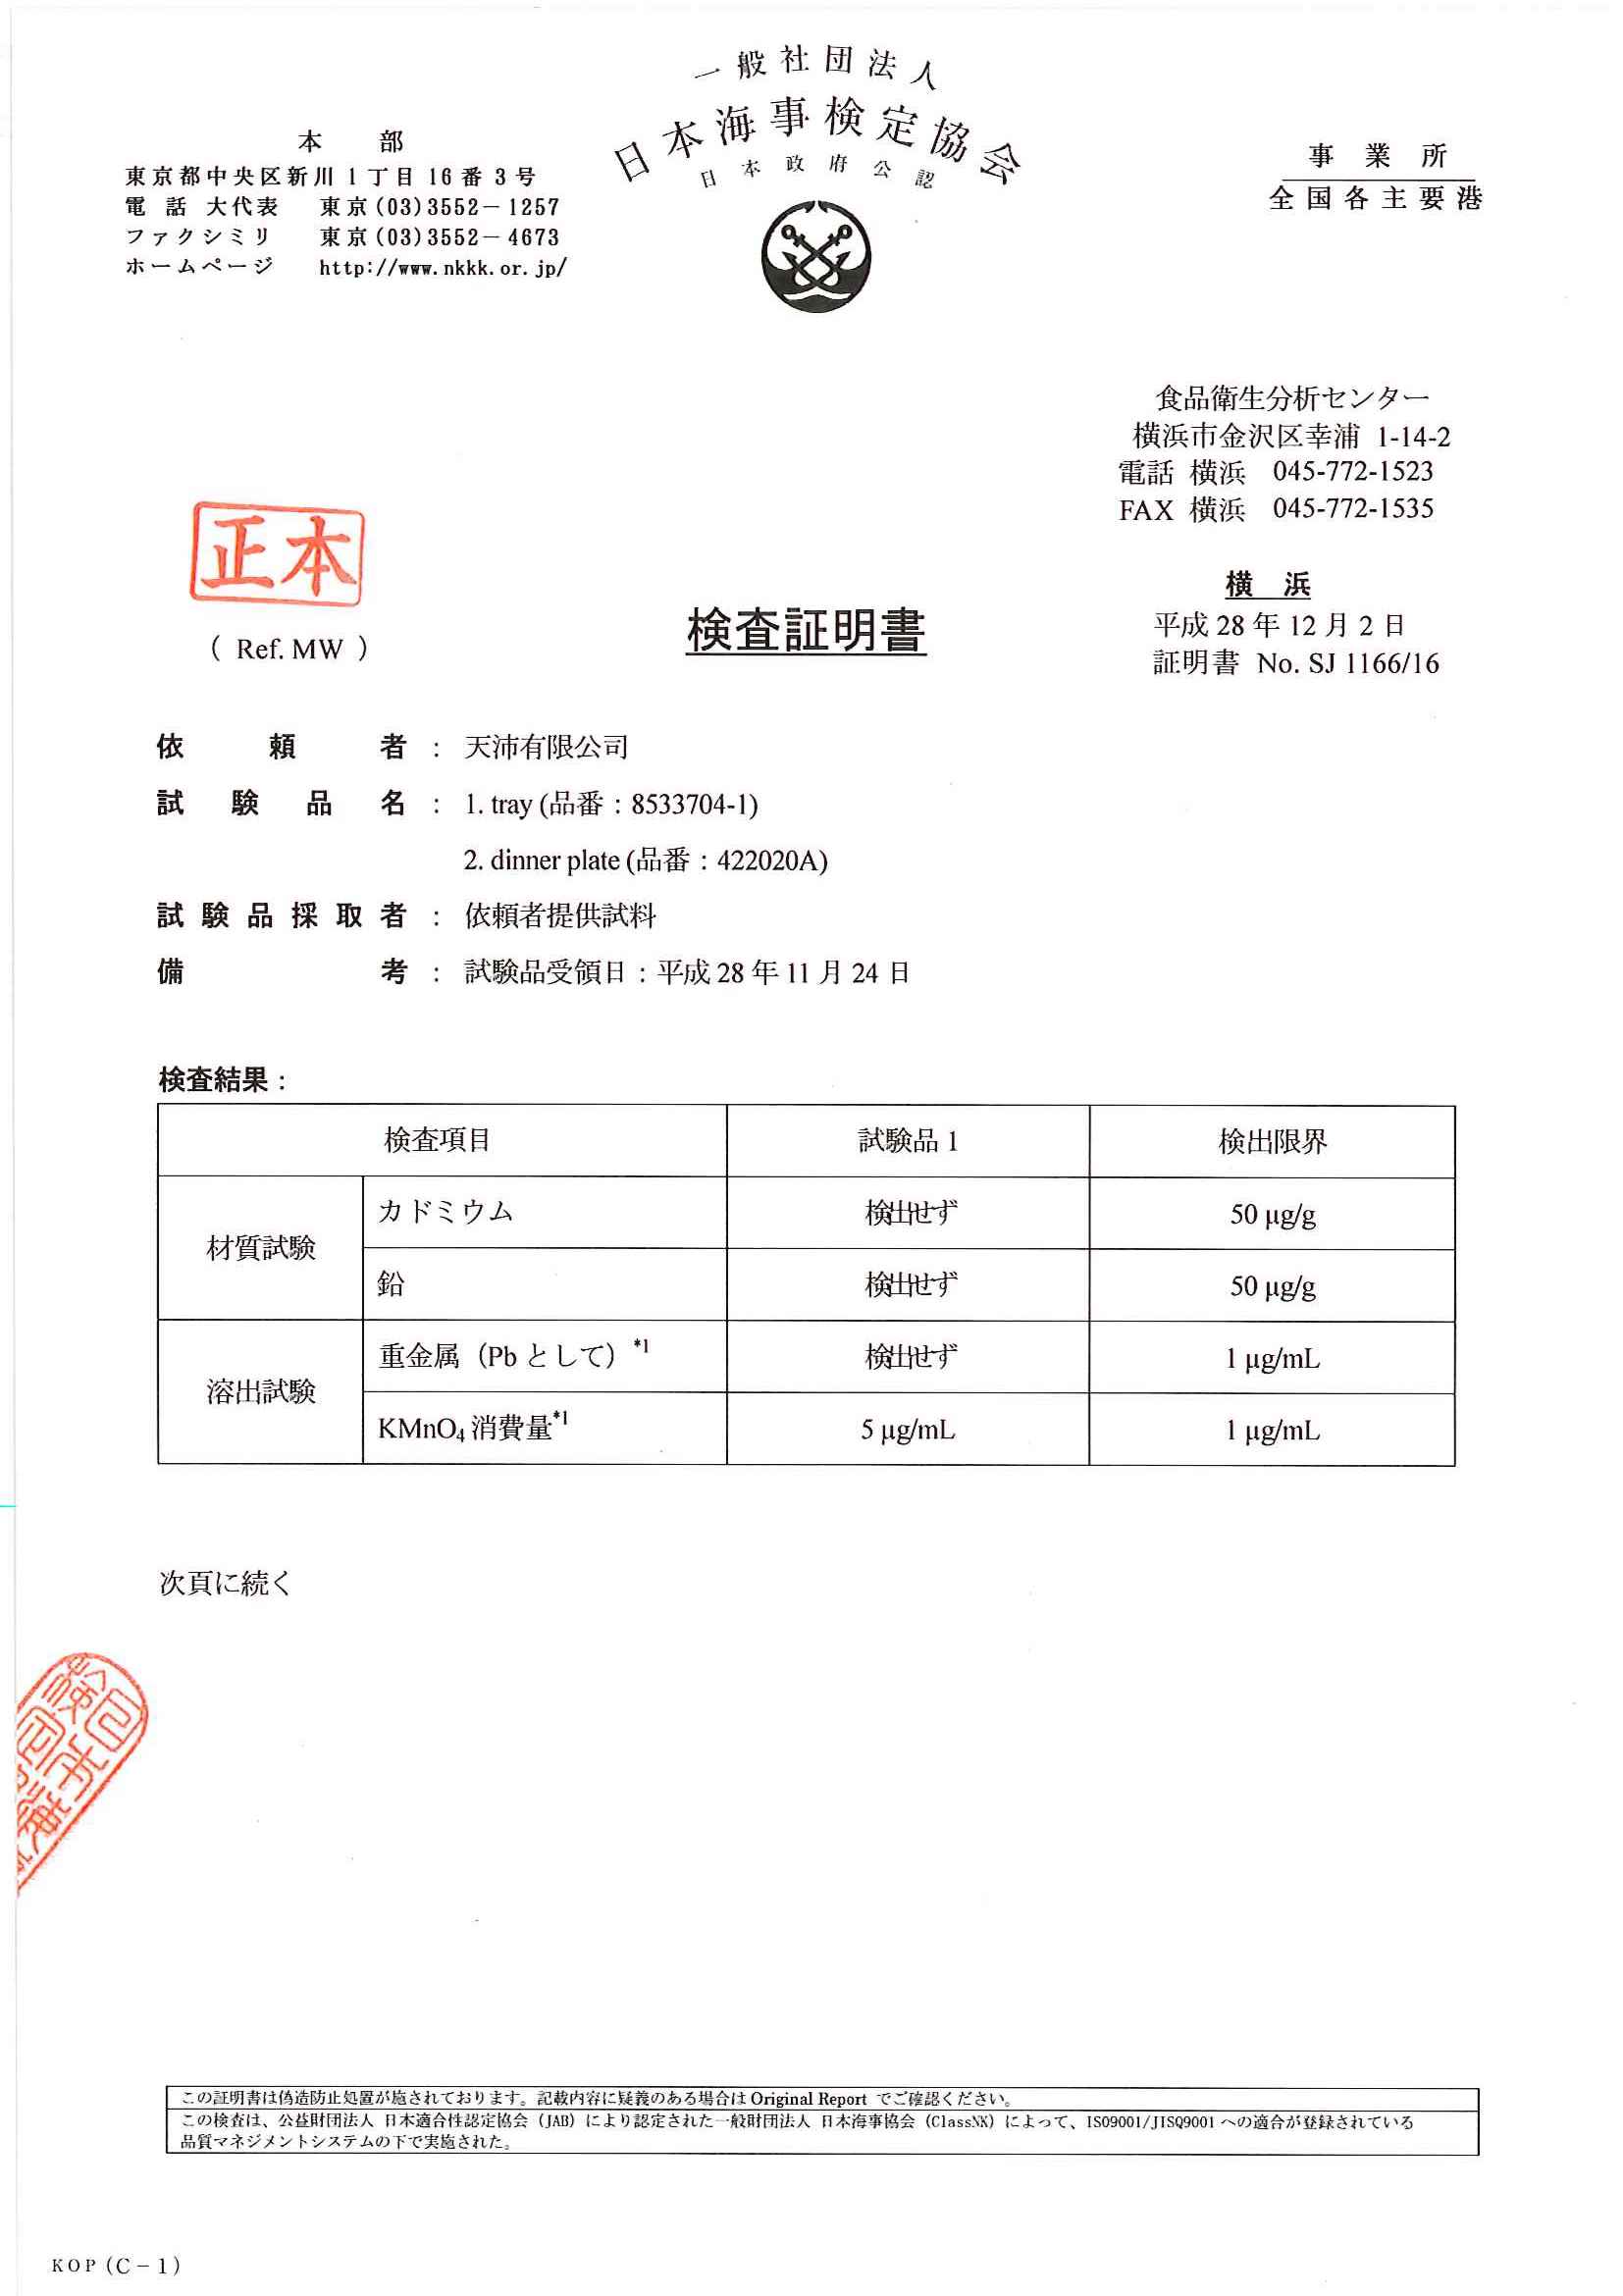 日本海事检定协会检测报告--8533704木盘、422020A石板_Página_1